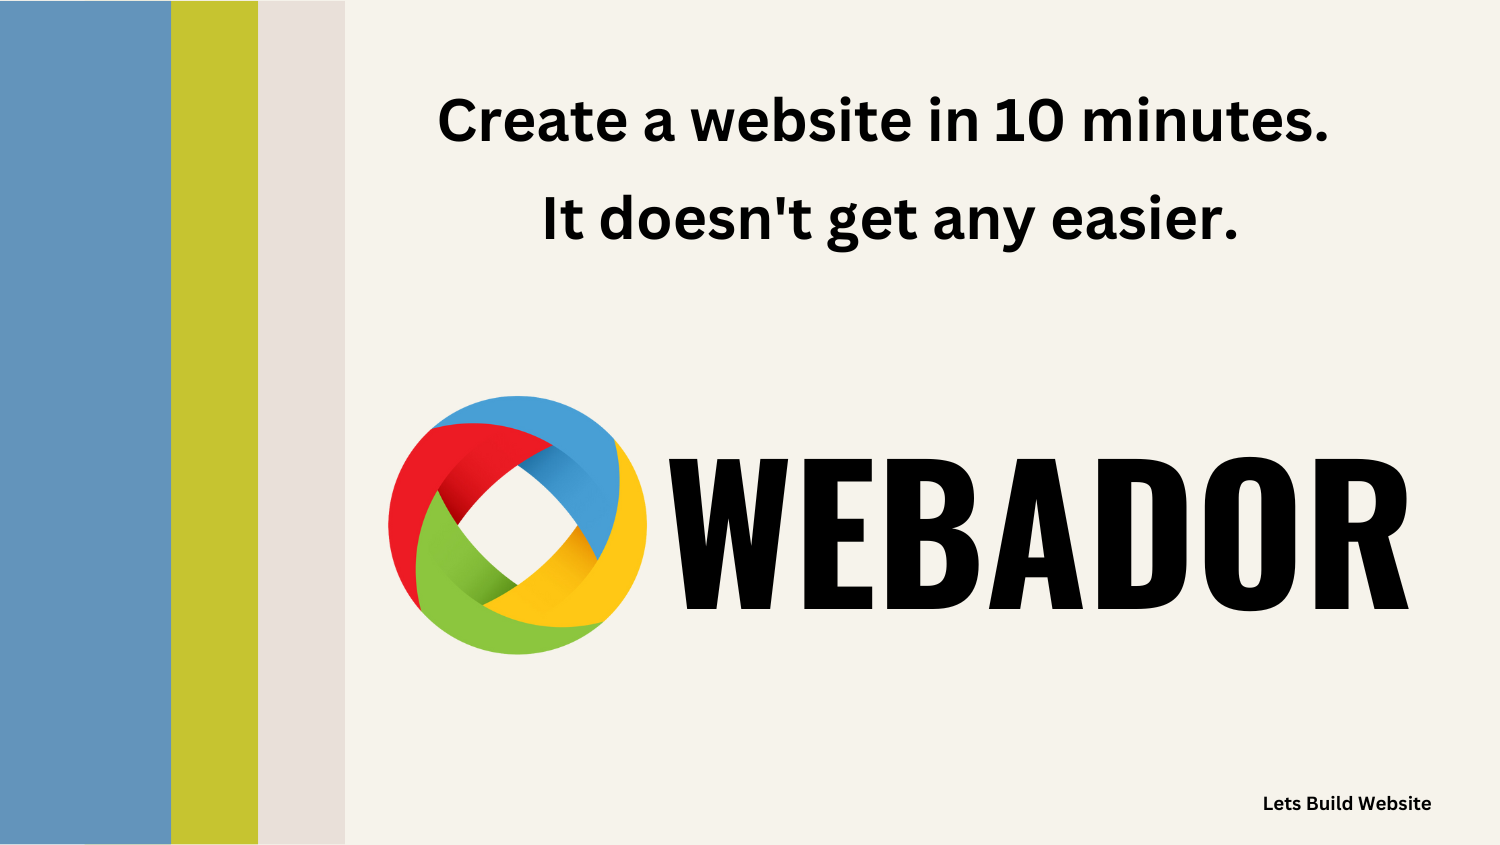 lets build website in 10 minutes webador website